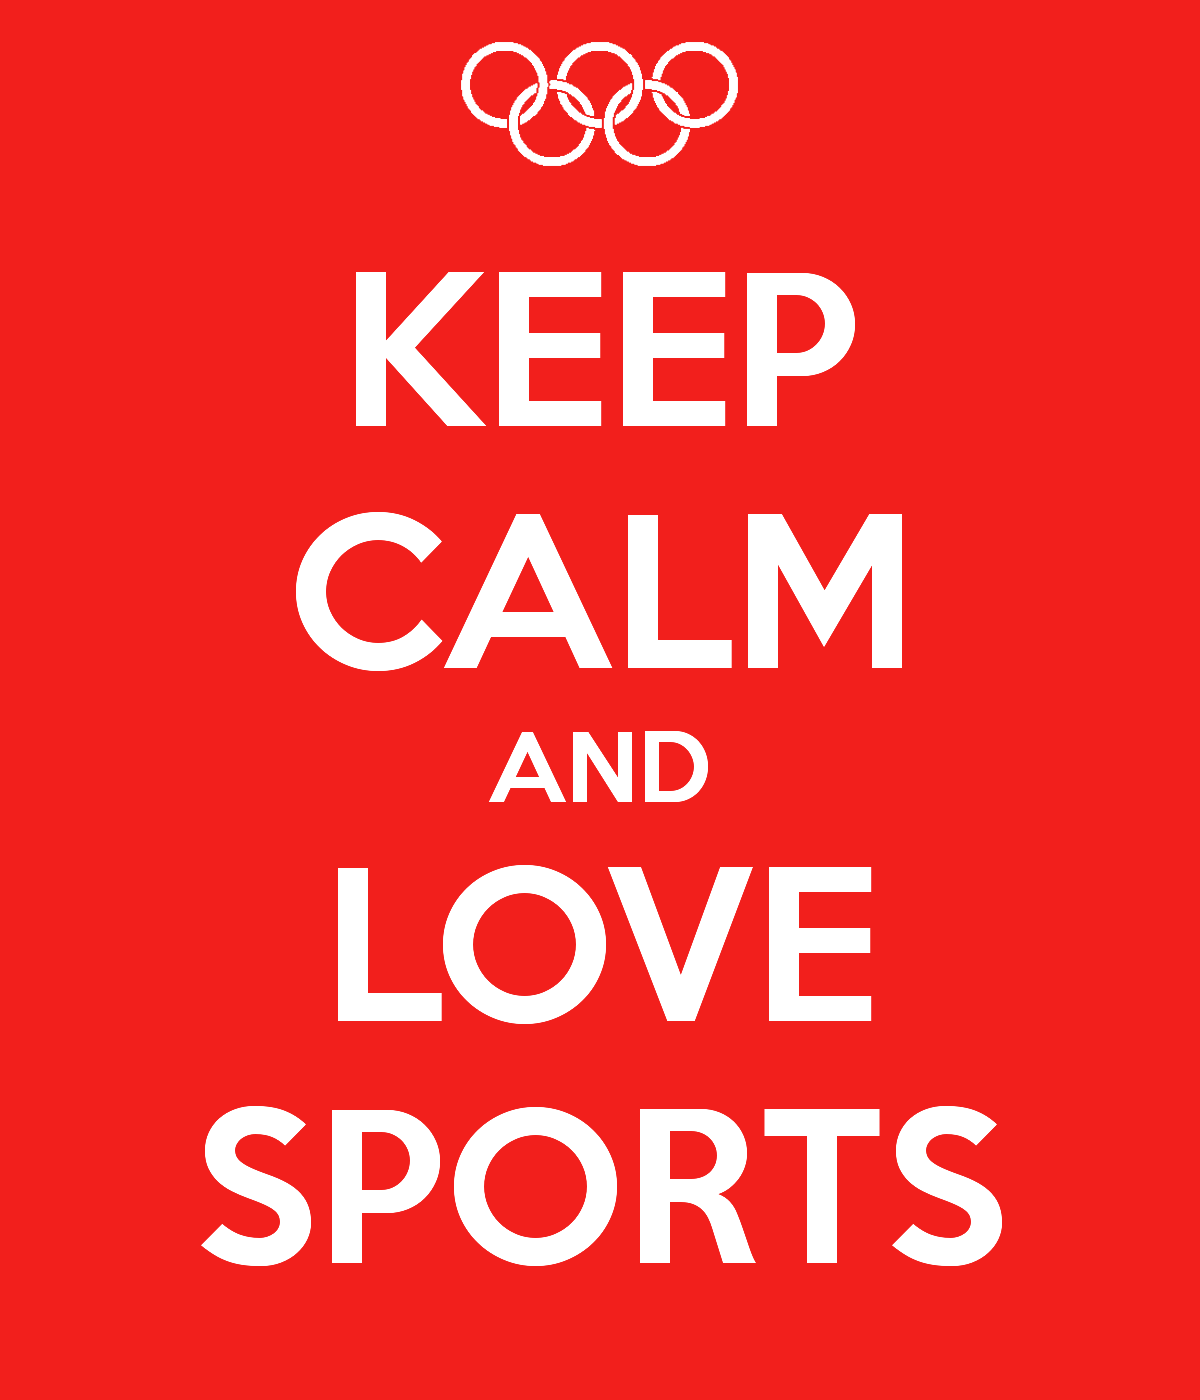 I Love Sport PNG Image Background